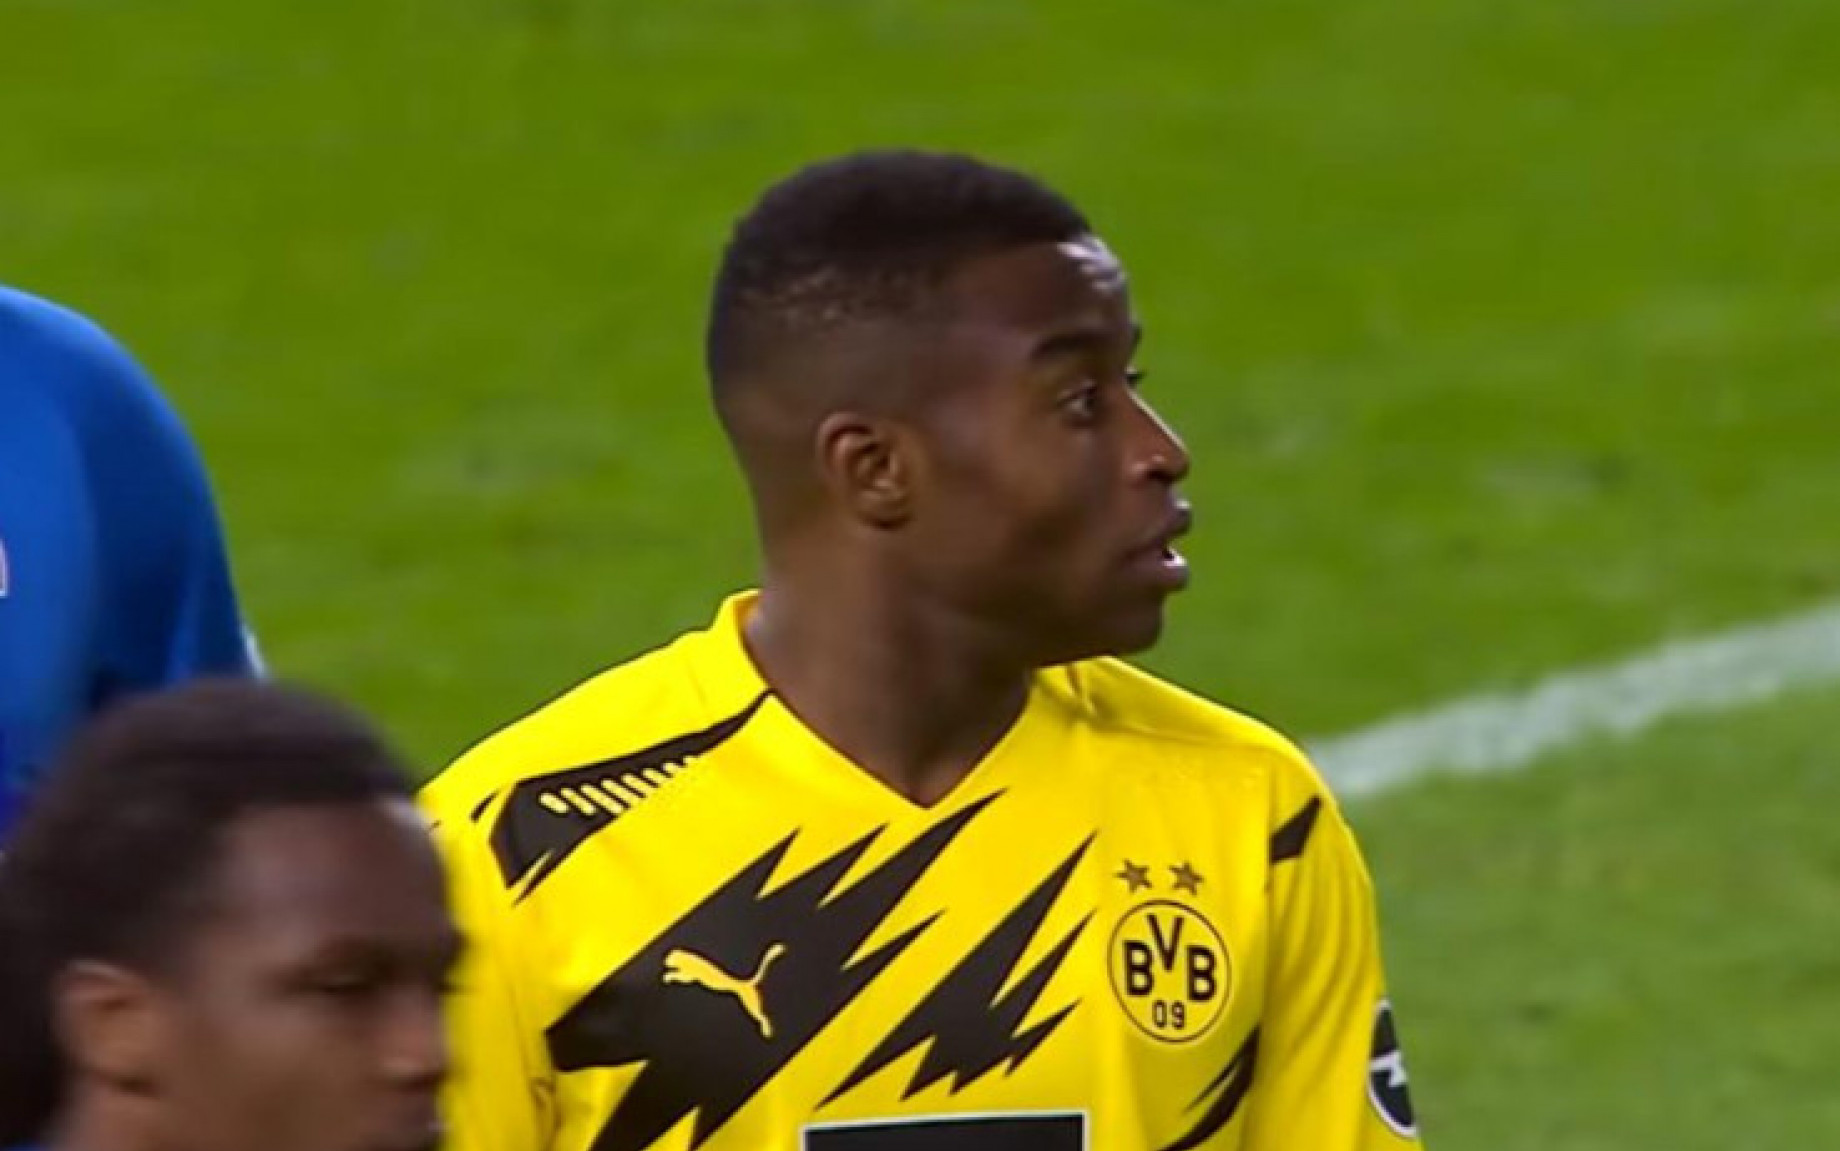 Moukoko_Borussia_Dortmund_screen_GDM4.jpg